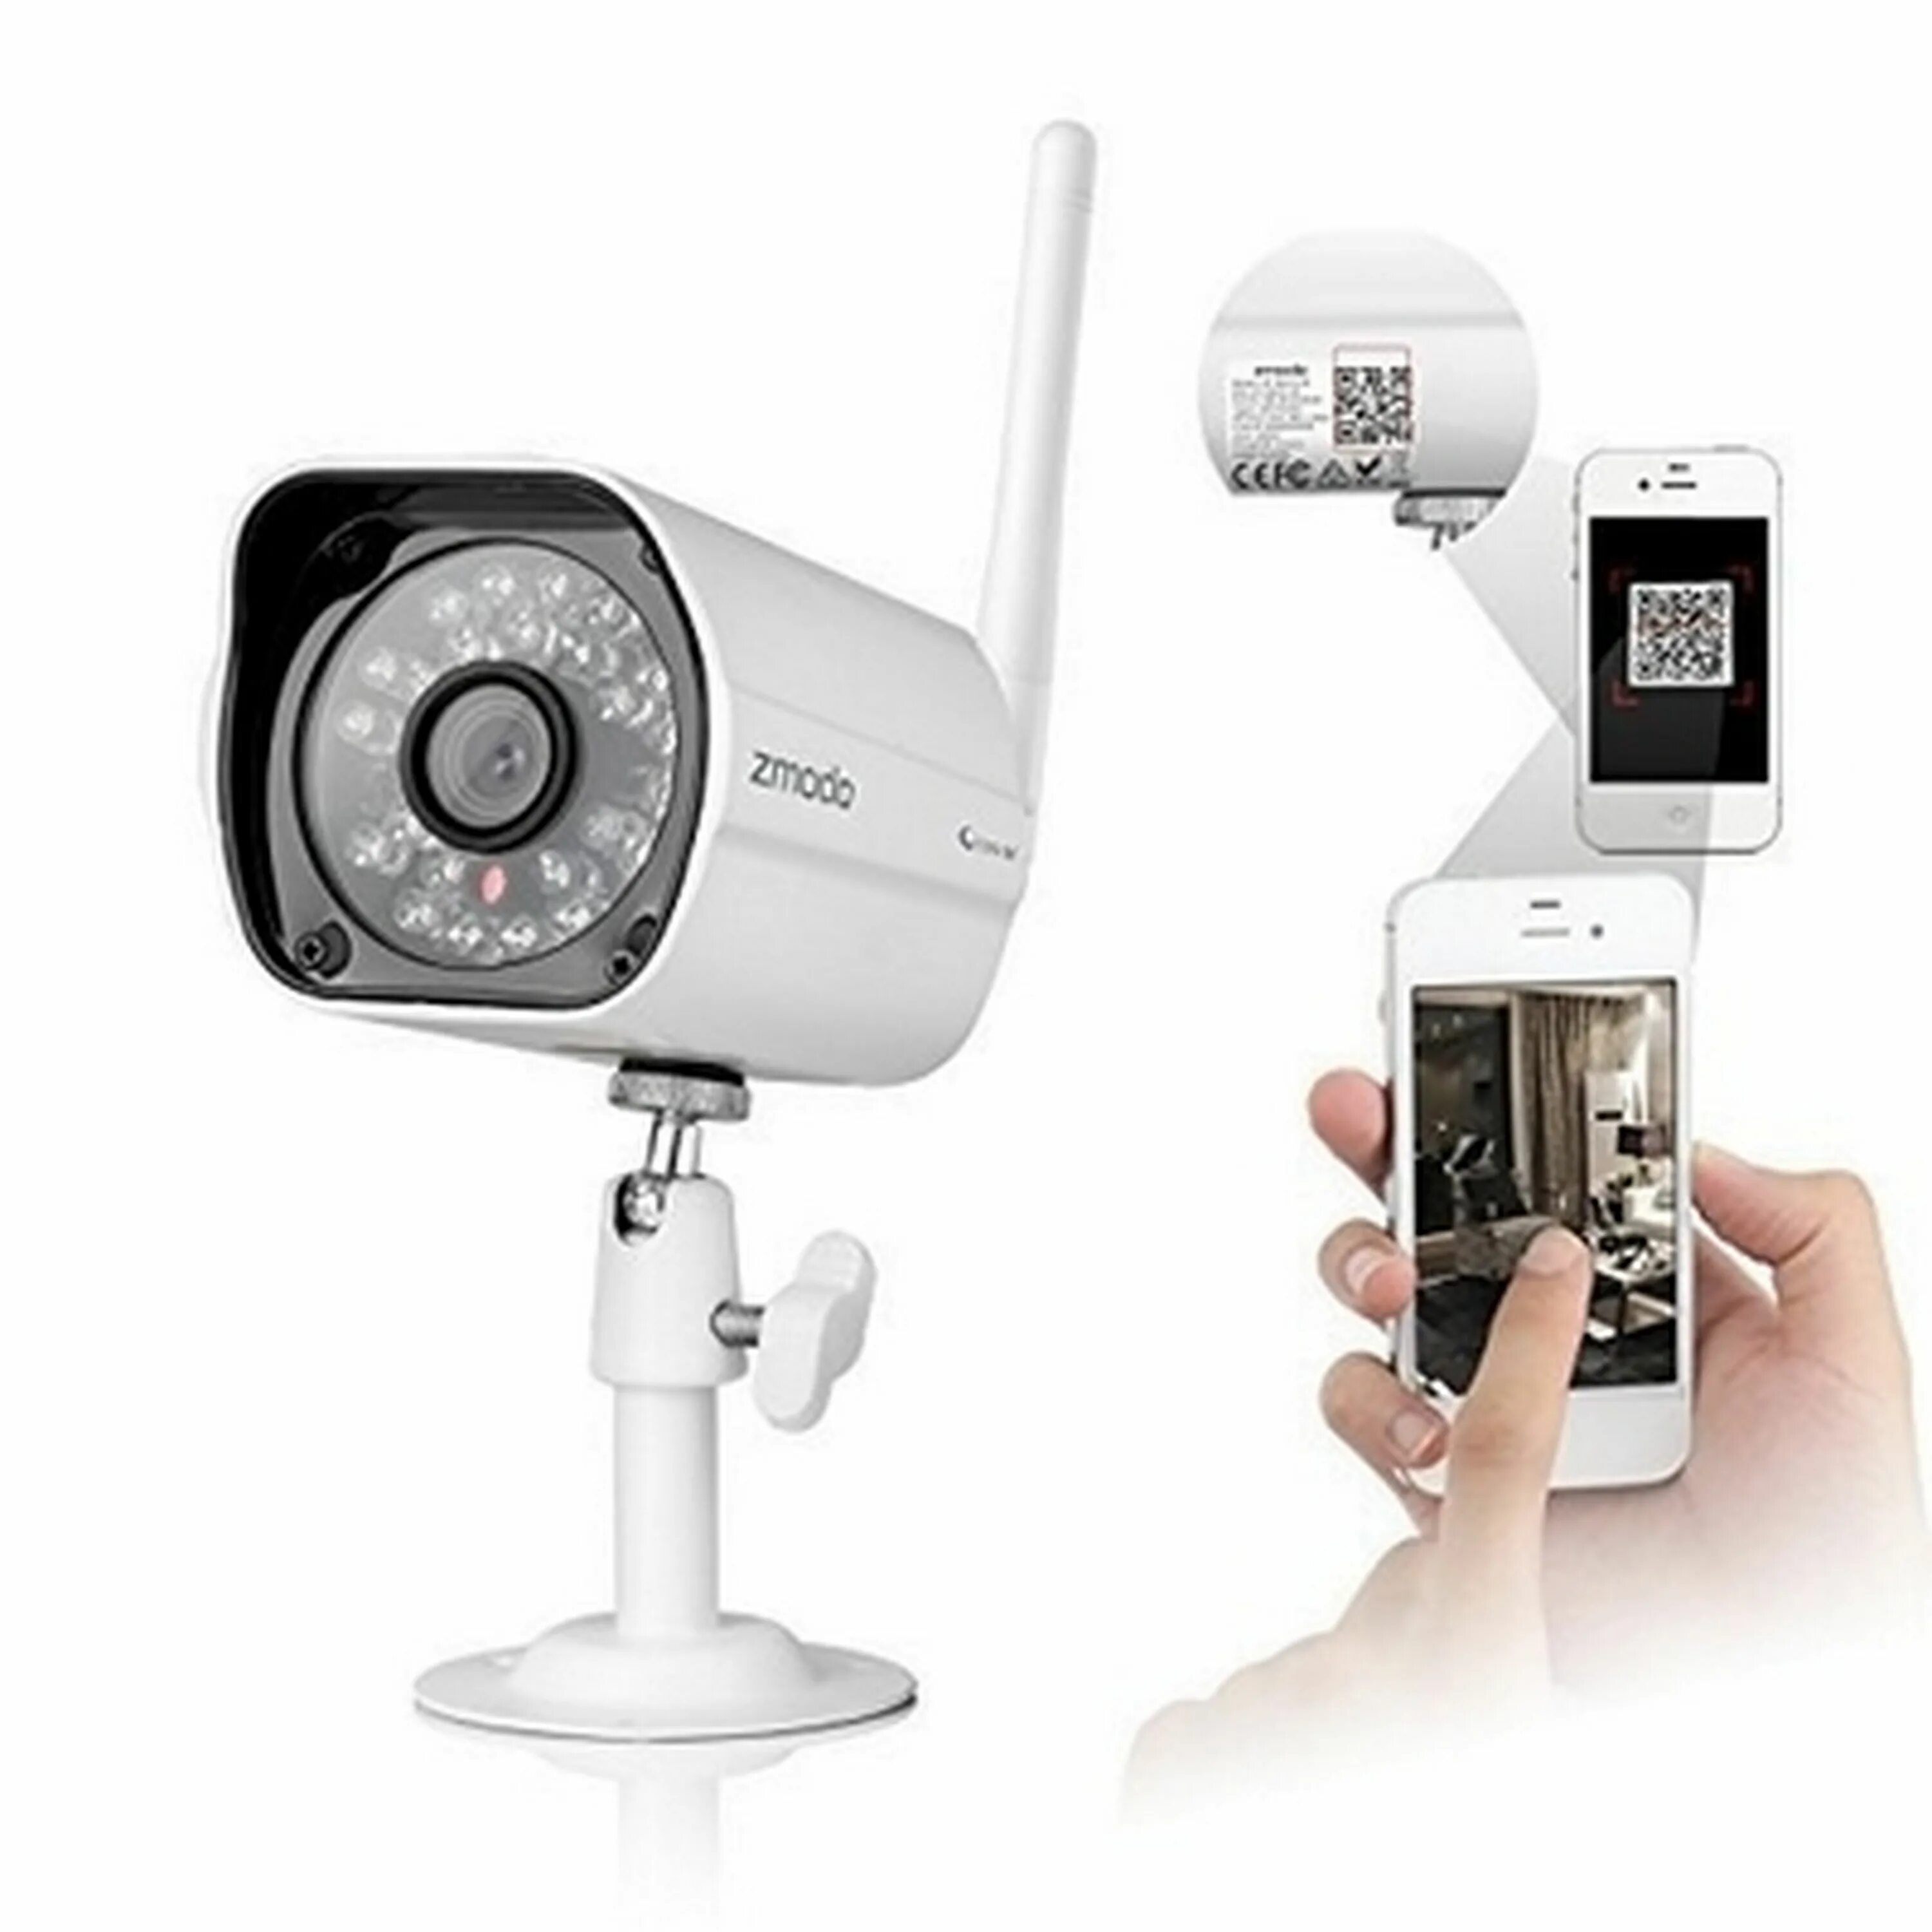 IP видеокамера a8s-h Wi-Fi камера. IP камера модель 1sb04 720 IP Camera. HJT-ep5mp-WIFI камера видеонаблюдения. Камера с интернетом для наблюдения через телефон